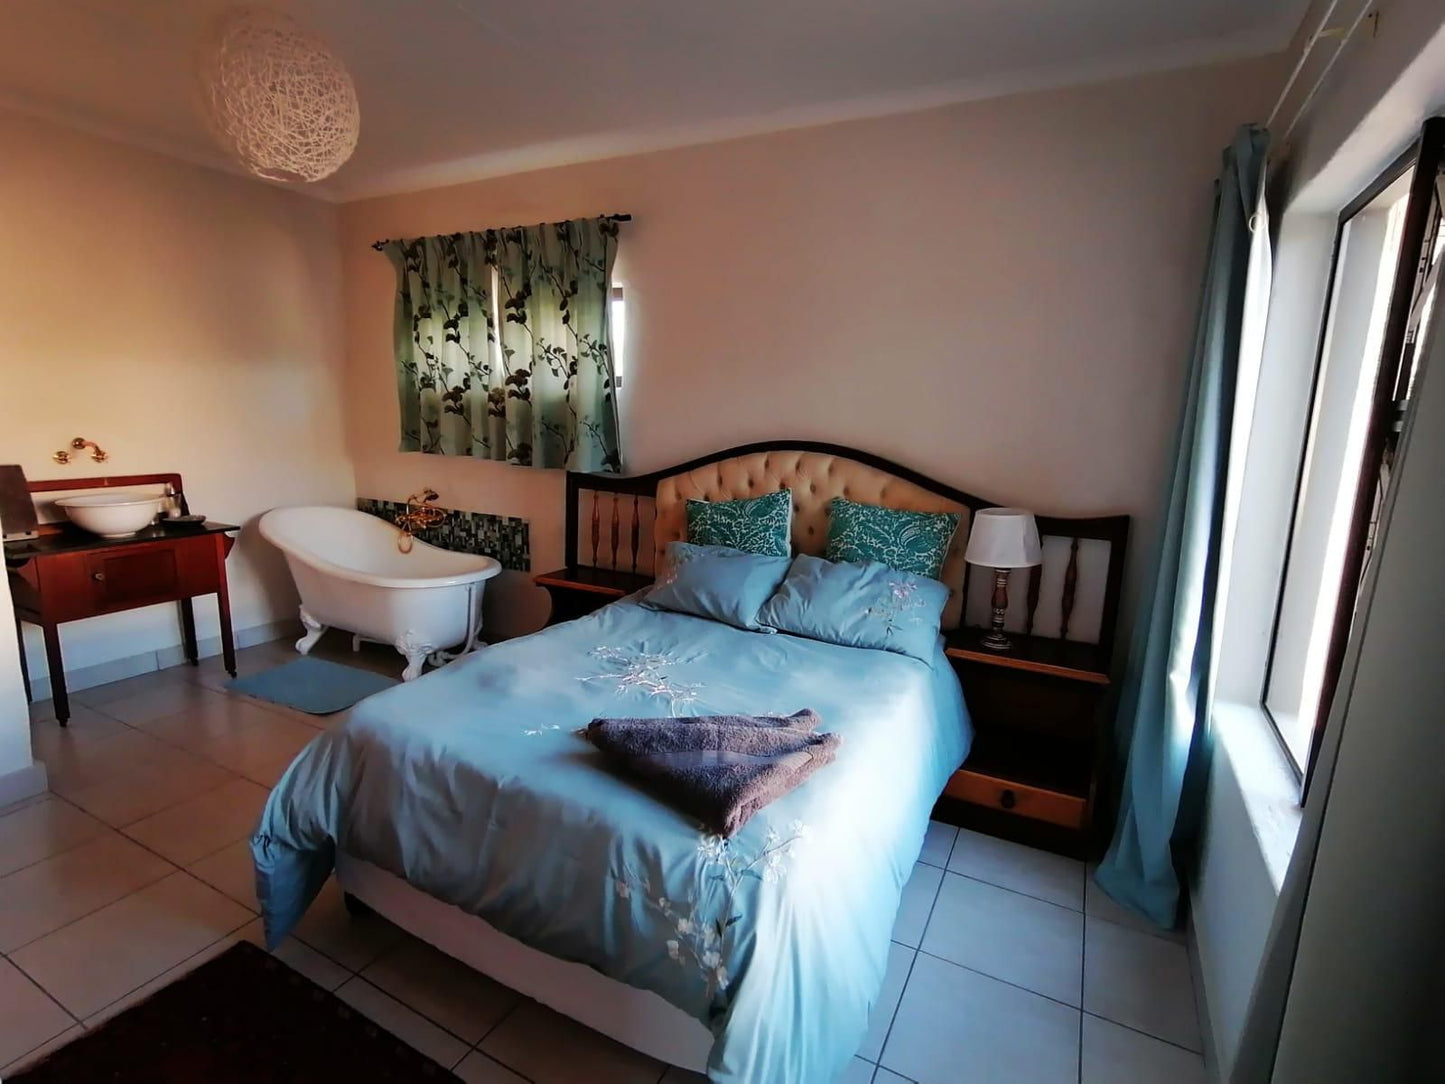 Skoenlapper Port Owen Velddrif Western Cape South Africa Bedroom